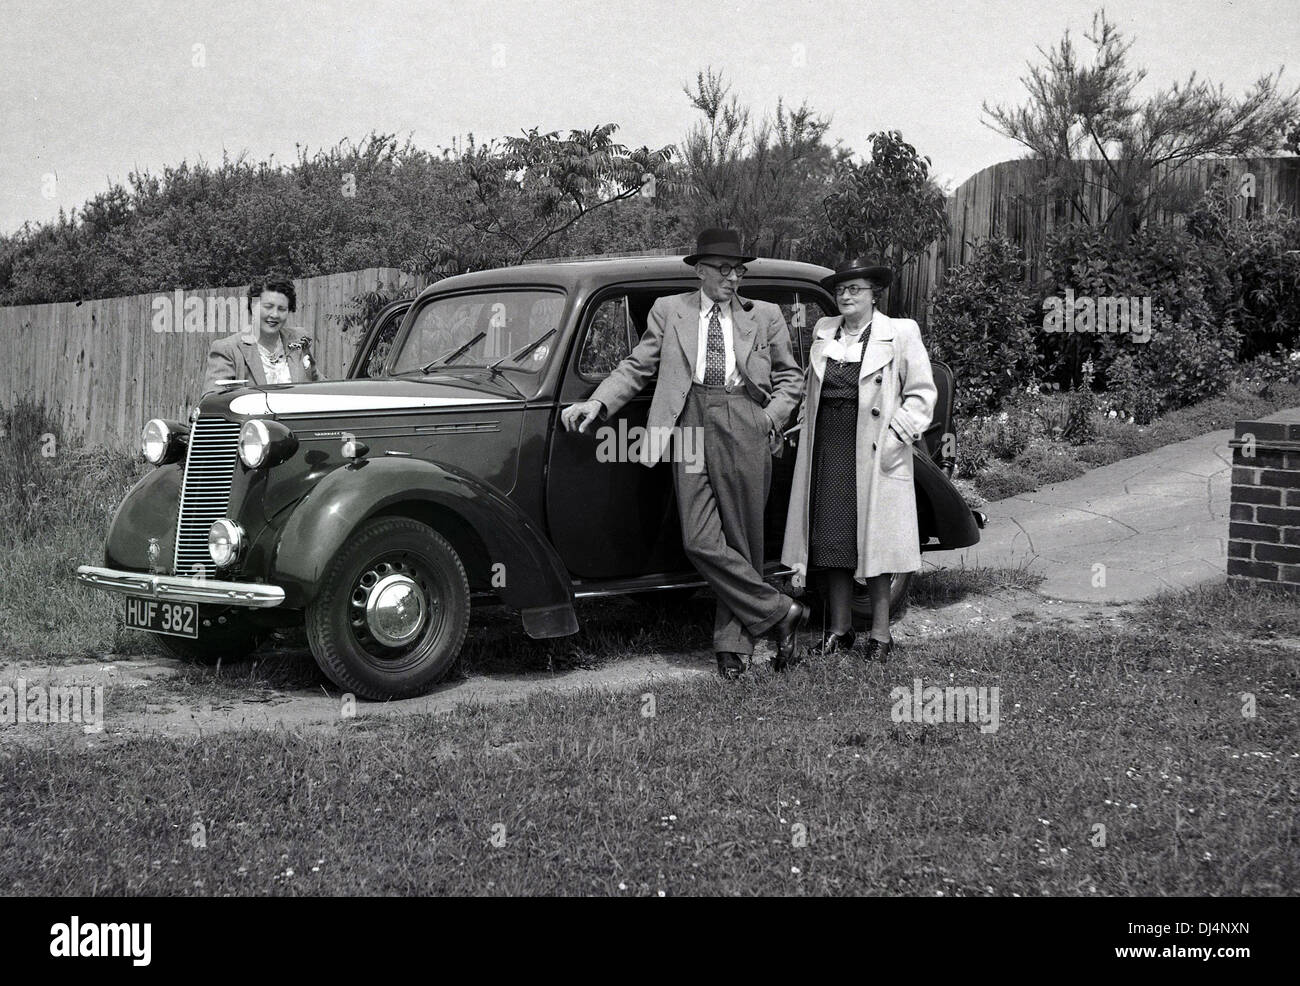 1940s, historisch, drei elegant gekleidete Menschen, die an einem Auto der damaligen Zeit in einer Auffahrt standen, England, Großbritannien. Stockfoto